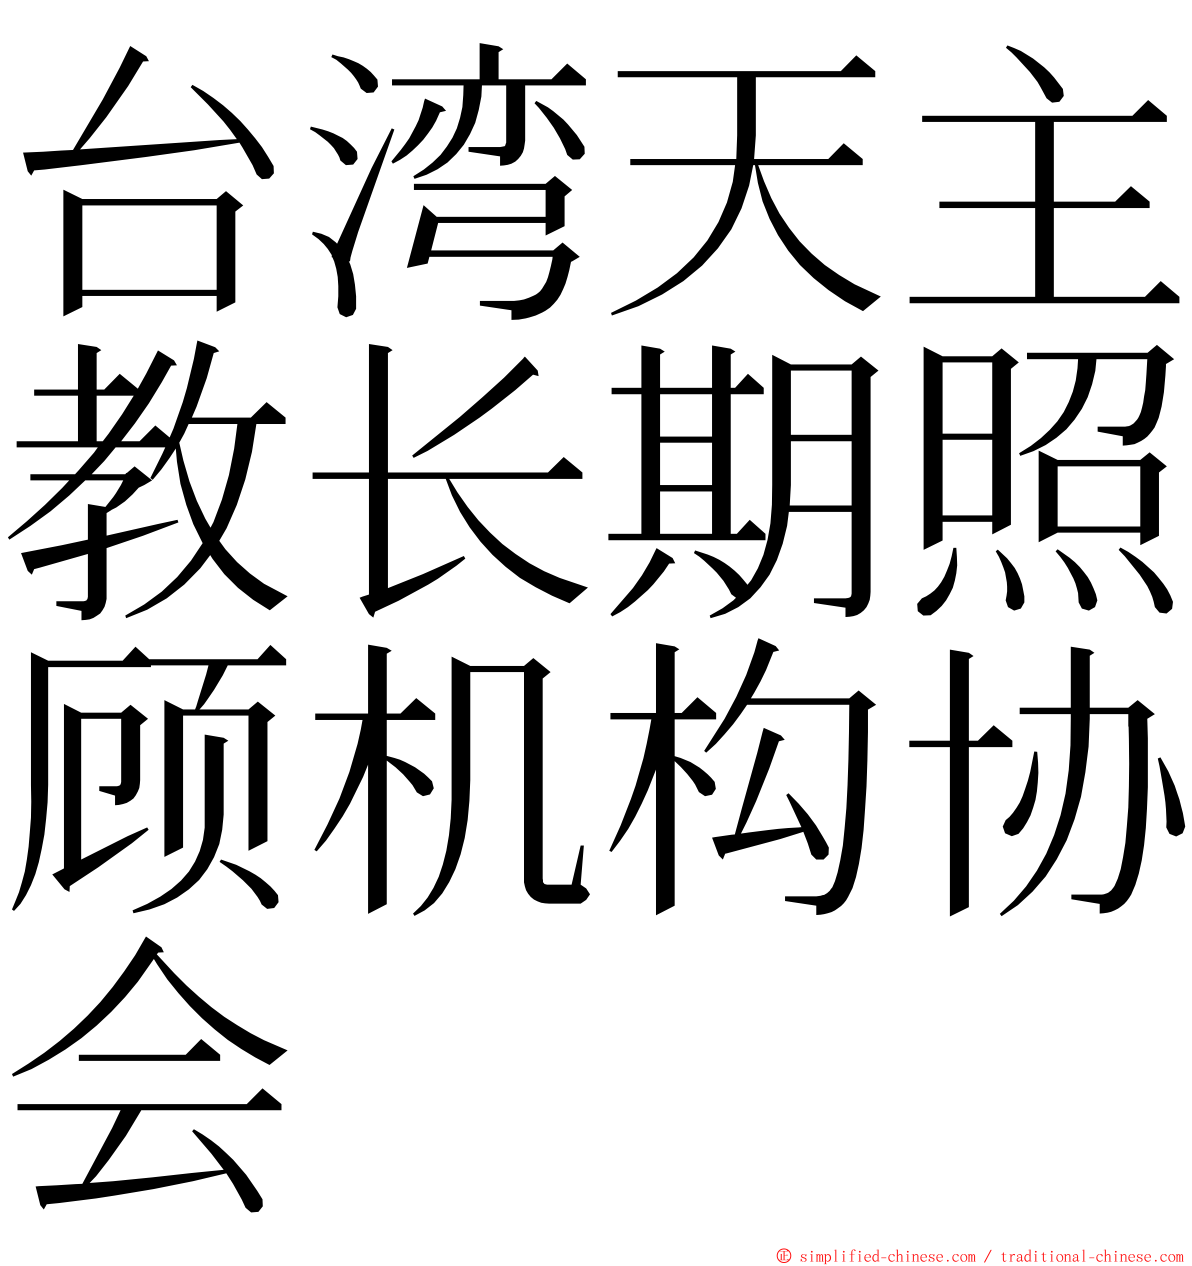 台湾天主教长期照顾机构协会 ming font